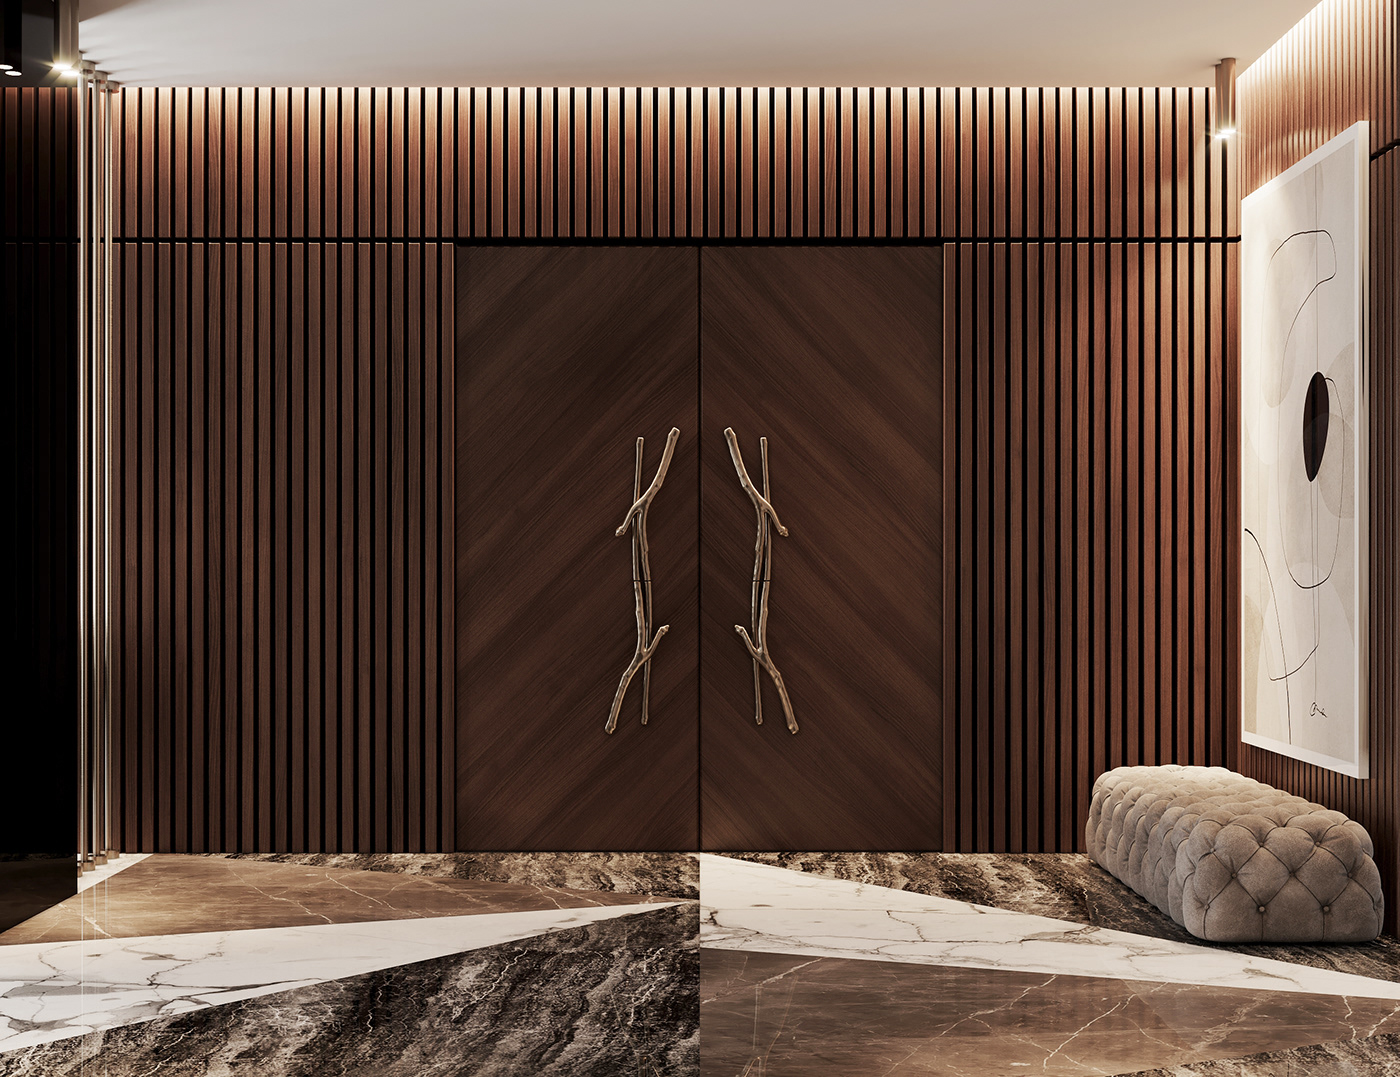 3ds max architecture archviz CoronaRender  interior design  modern Render visualization